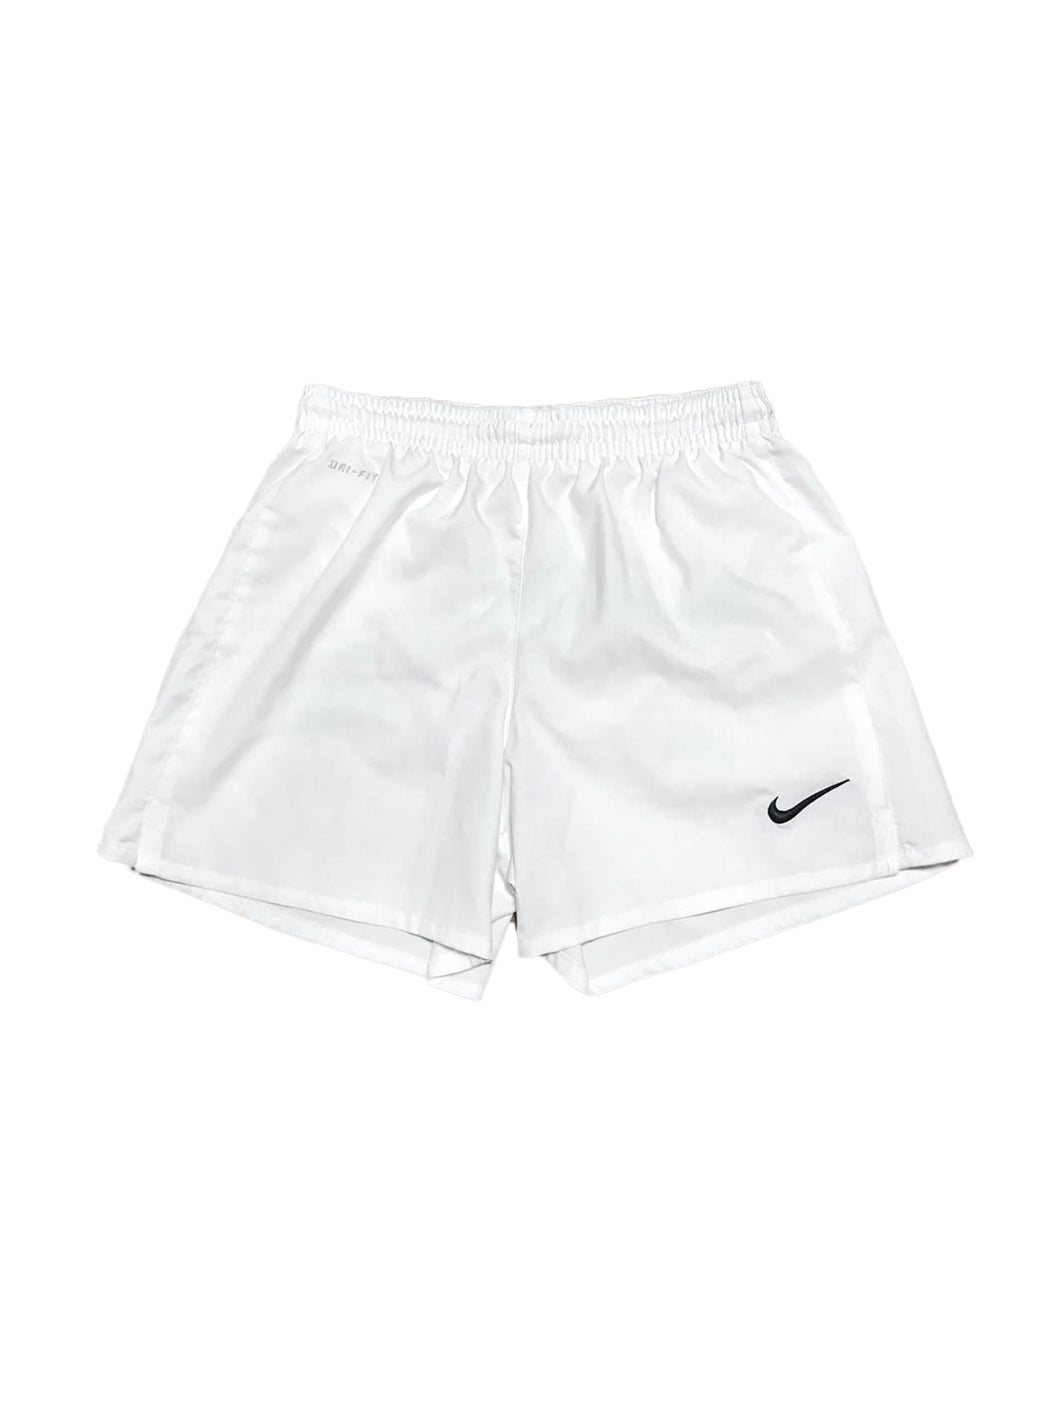 Nike Dri-FIT White Shorts